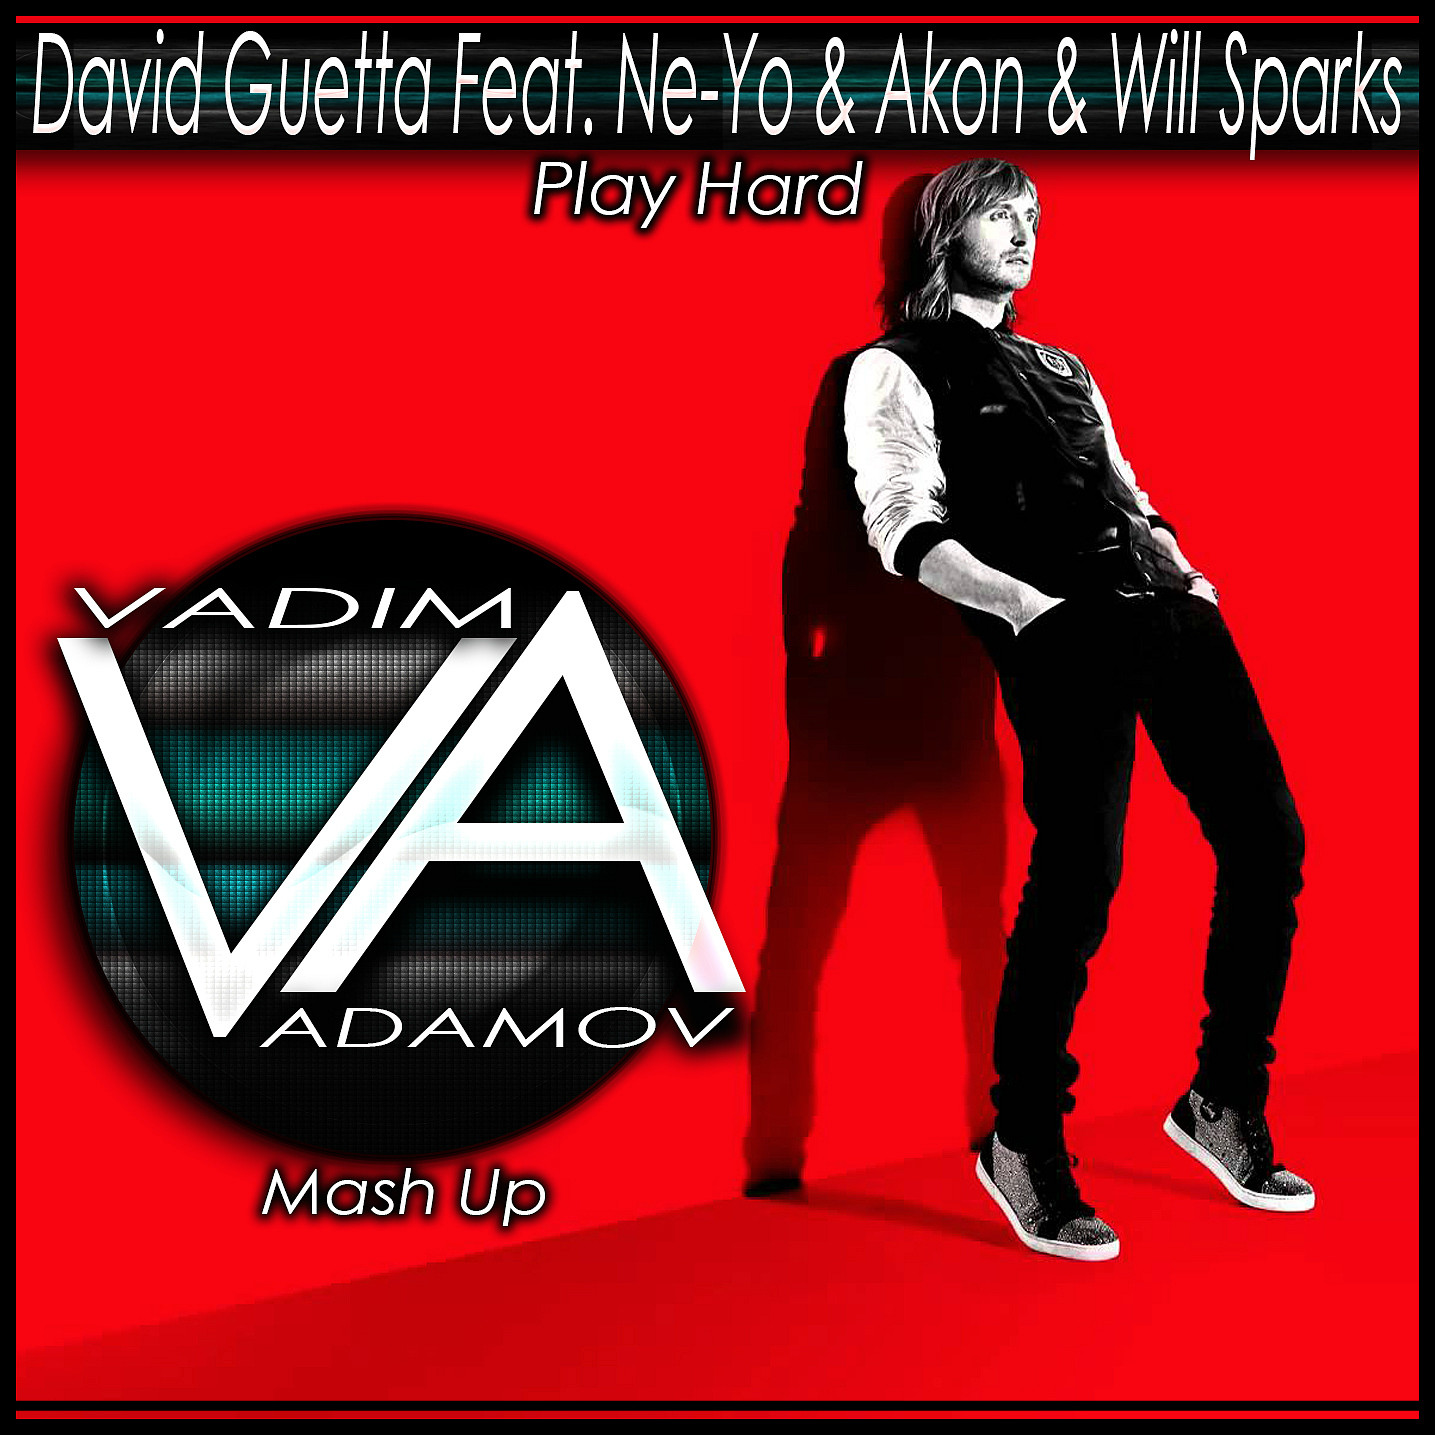 Akon bitch feat. David Guetta, Akon, ne-yo. David Guetta Play hard. Play hard обложка David Guetta.